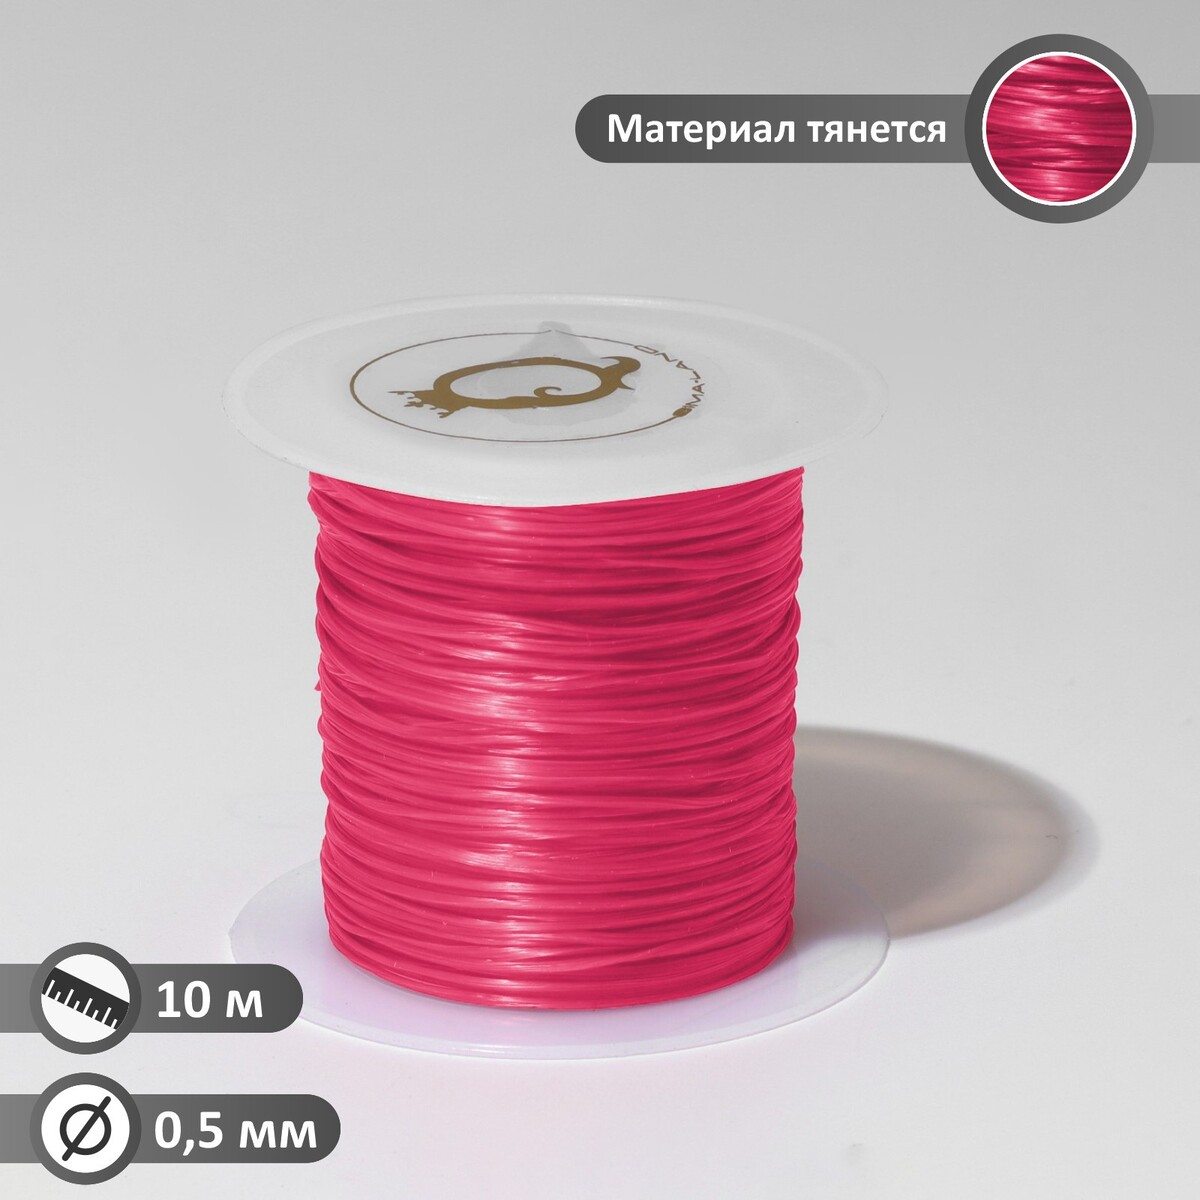 Нить силиконовая (резинка) d=0,5 мм, l=10 м (прочность 2250 денье), цвет розовый нить силиконовая резинка d 0 5мм l 10м прочность 2250 денье темно зеленый